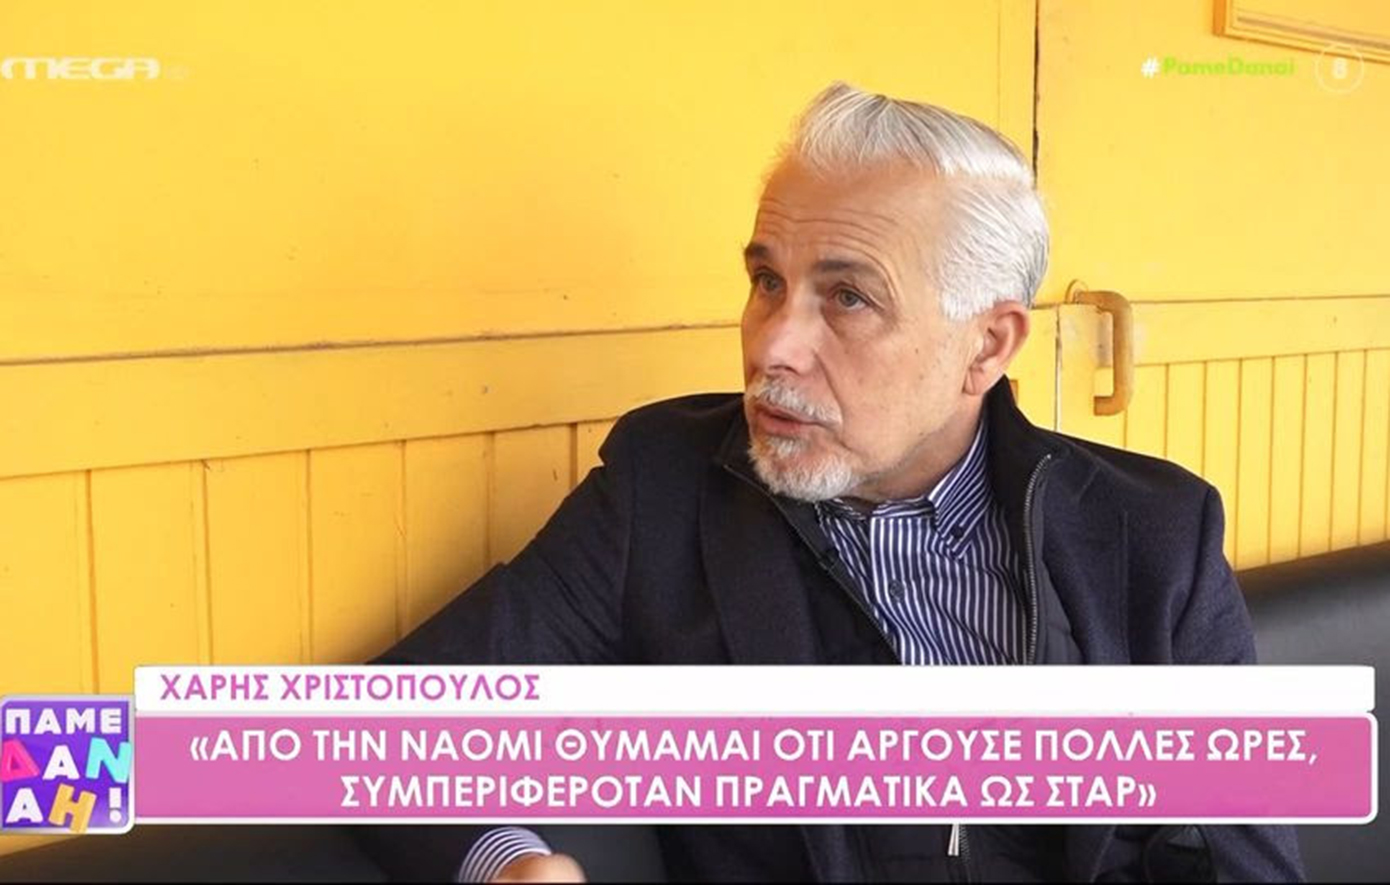 Χάρης Χριστόπουλος: Το μεγαλύτερο ψέμα που έχει γραφτεί είναι για τις σεξουαλικές μου προτιμήσεις